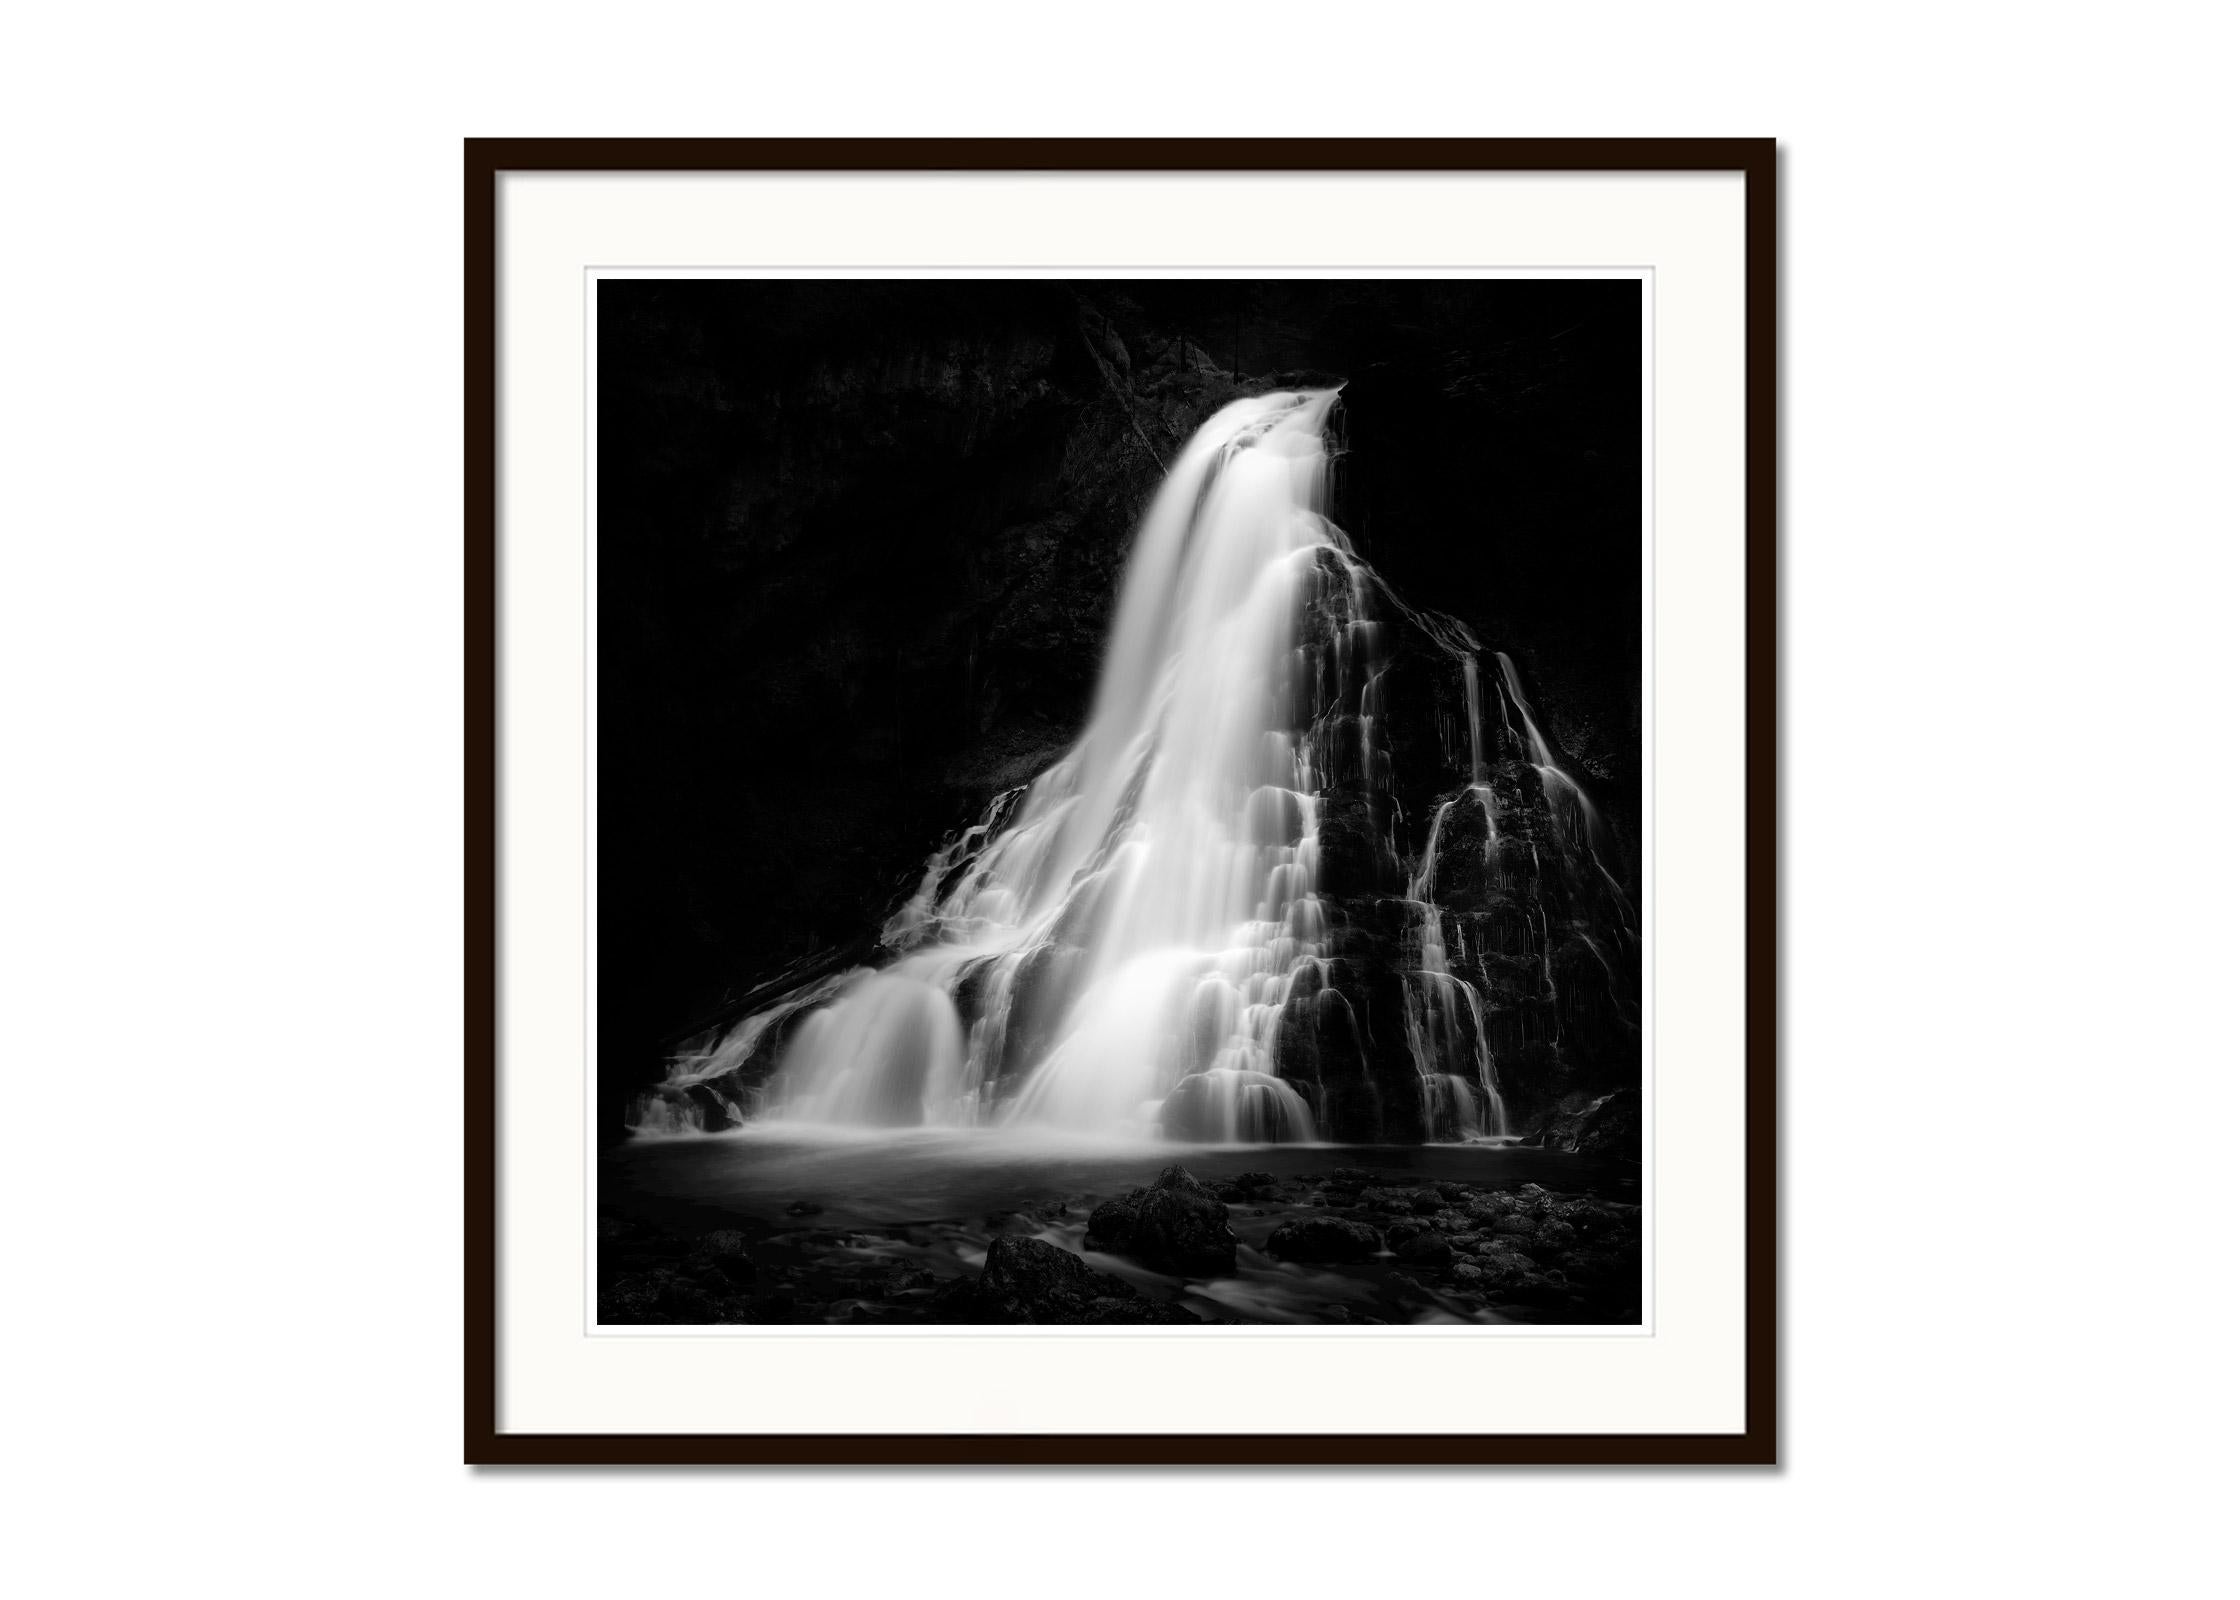 Schwarz-Weiß-Fotografie mit Langzeitbelichtung für Wasserlandschaften - Landschaftsfotografie. Pigmenttintendruck in einer limitierten Auflage von 7 Exemplaren. Alle Drucke von Gerald Berghammer werden auf Bestellung in limitierter Auflage auf